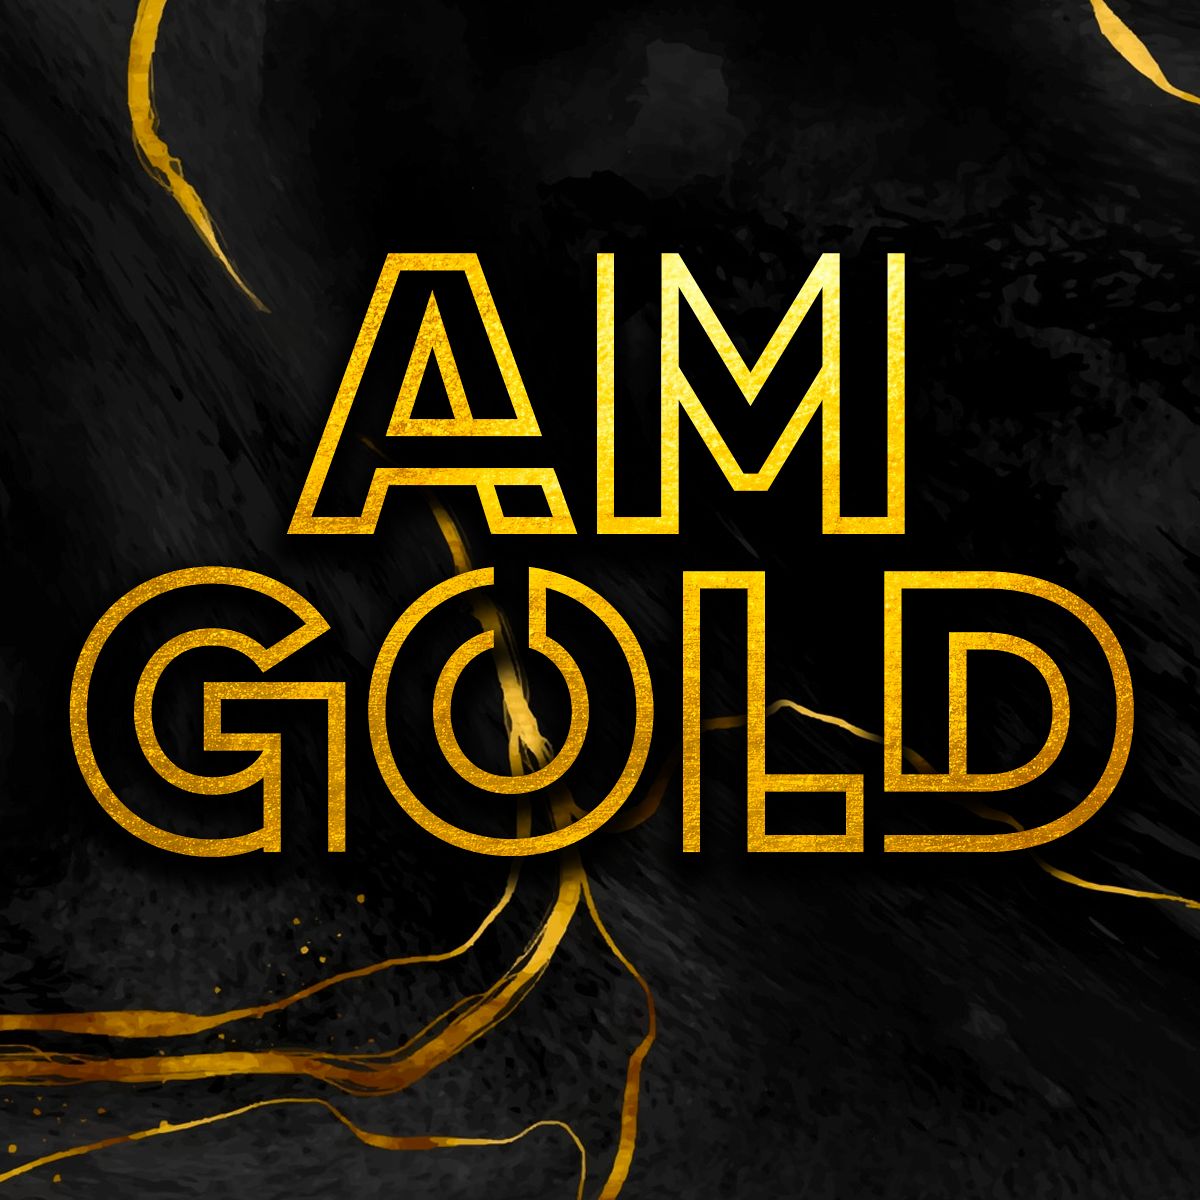 AM Gold